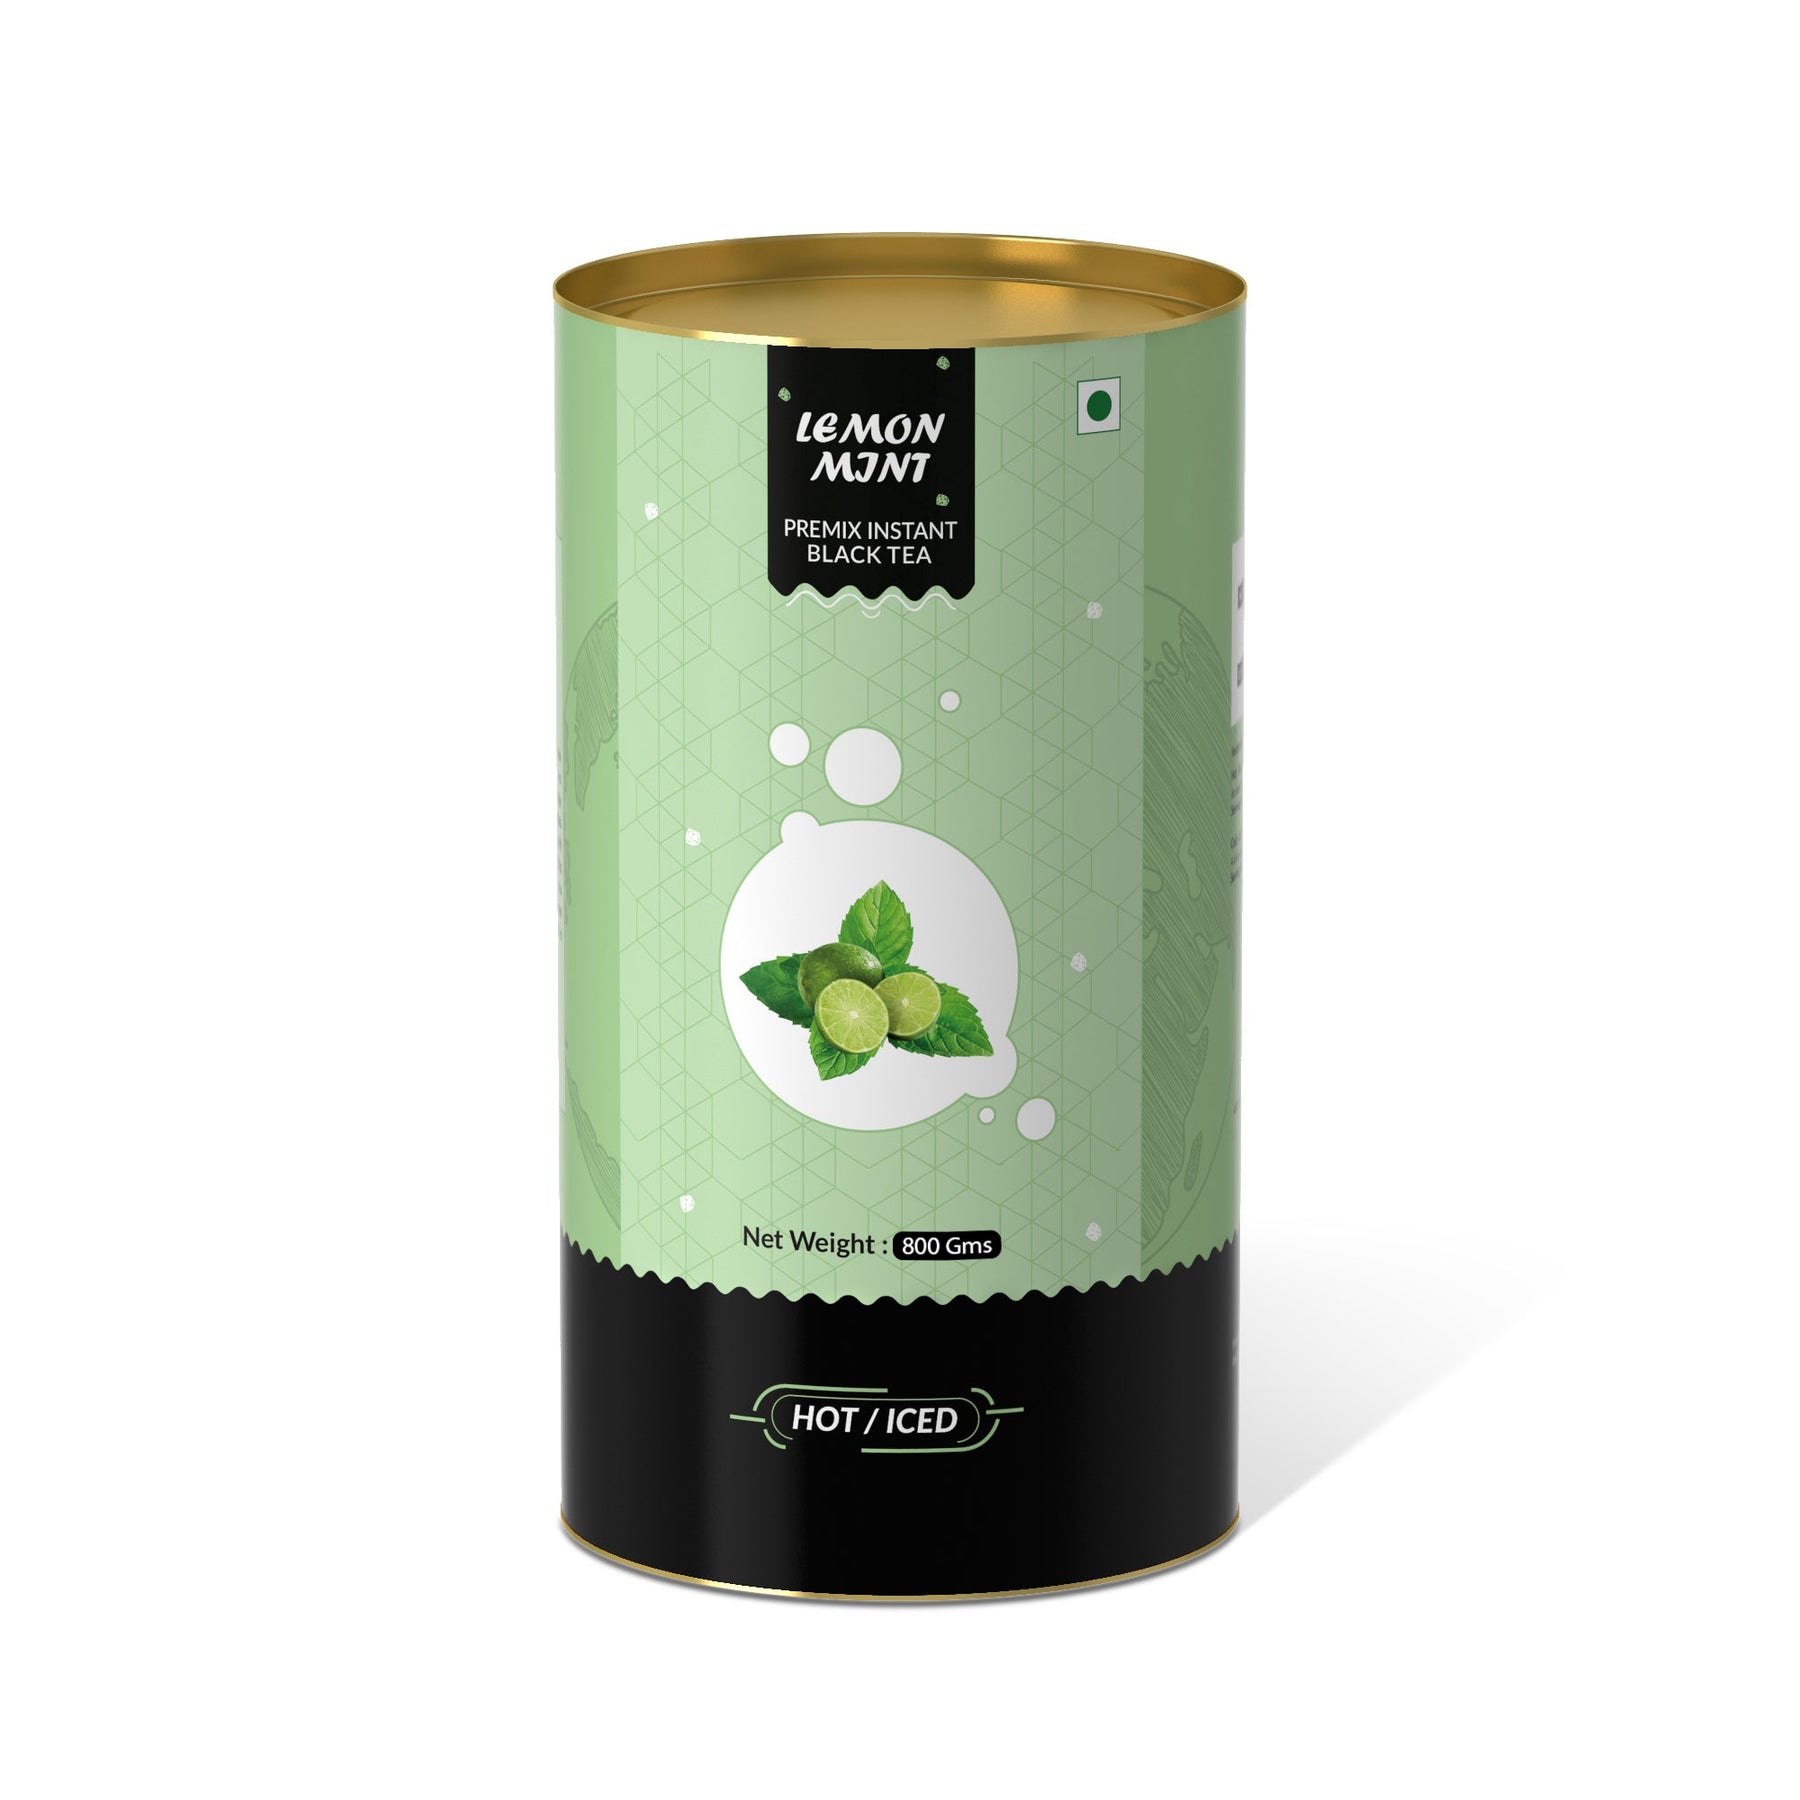 Lemon &mint Flavored Instant Black Tea - 250 gms